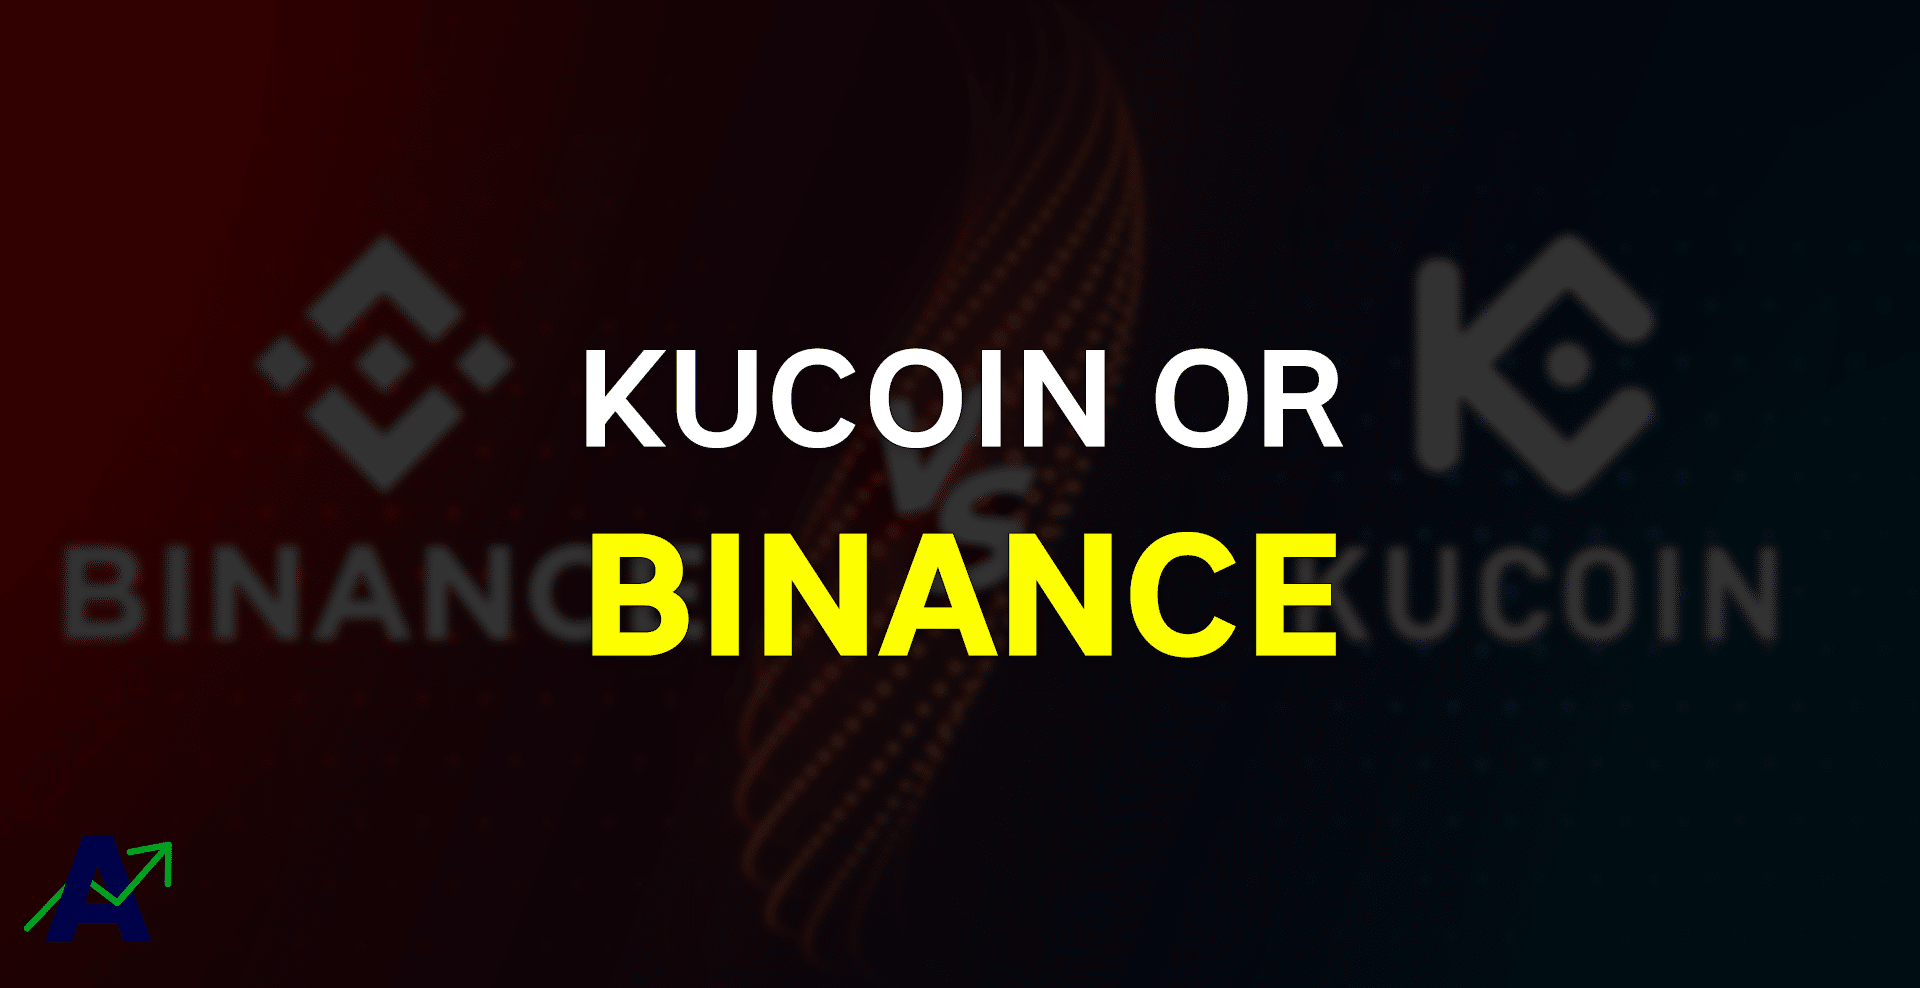 Binance versus KuCoin